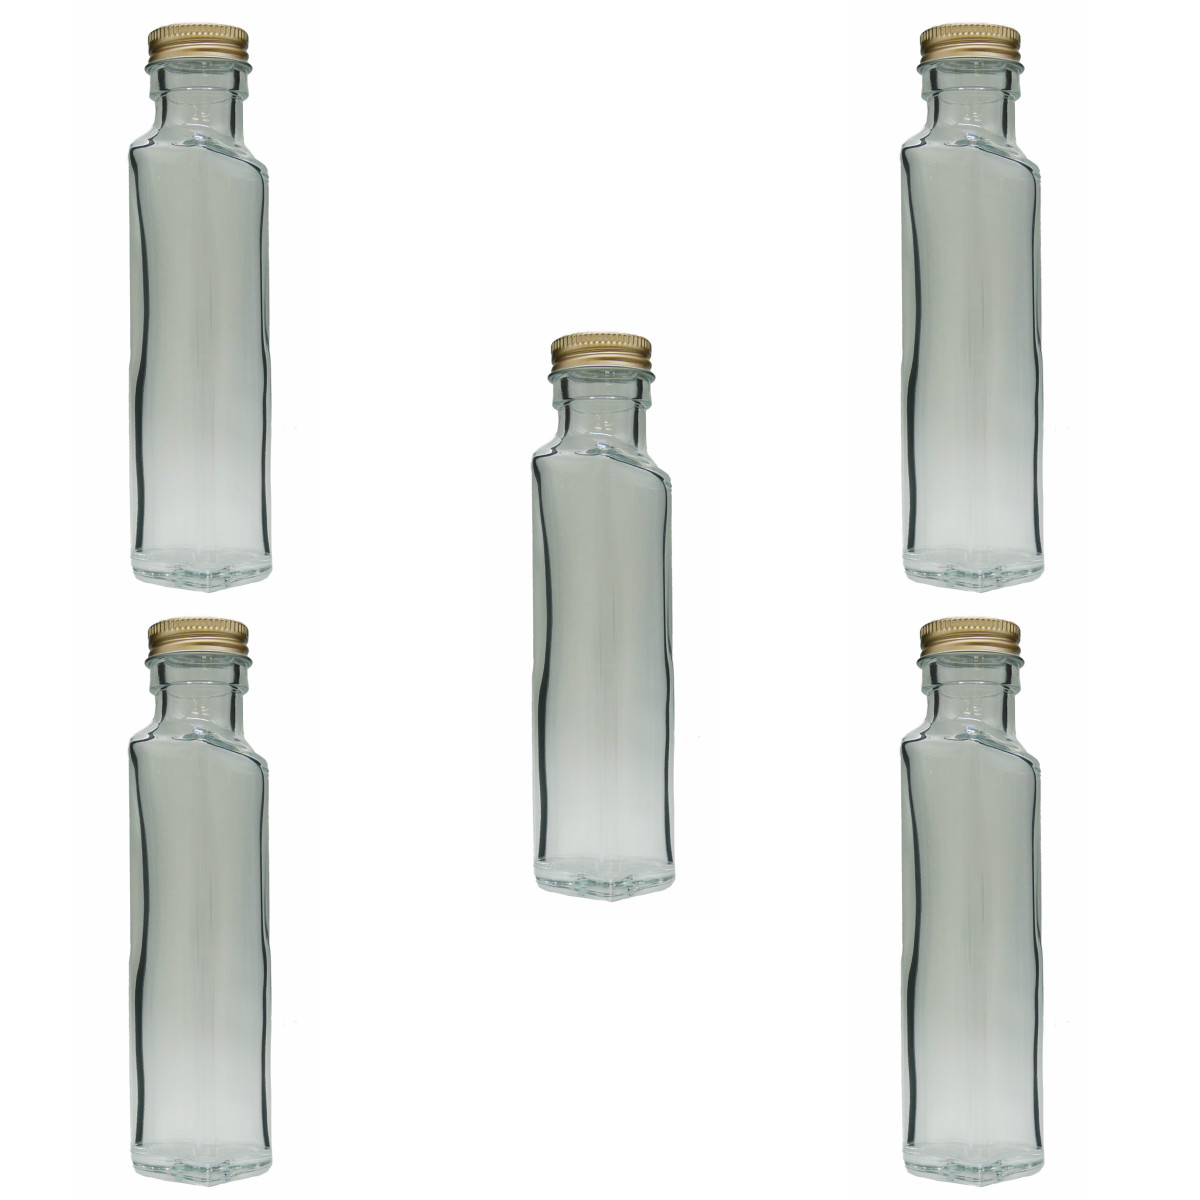 2021人気の ハーバリウム 瓶 ボトル <br><br>ガラス瓶 セット まとめ買い キャップ付 ガラス ビン 透明瓶 花材 ウエディング  プリザーブドフラワー インスタ ボトルフラワー オイル 酒瓶 ジュース瓶 調味料 保存容器